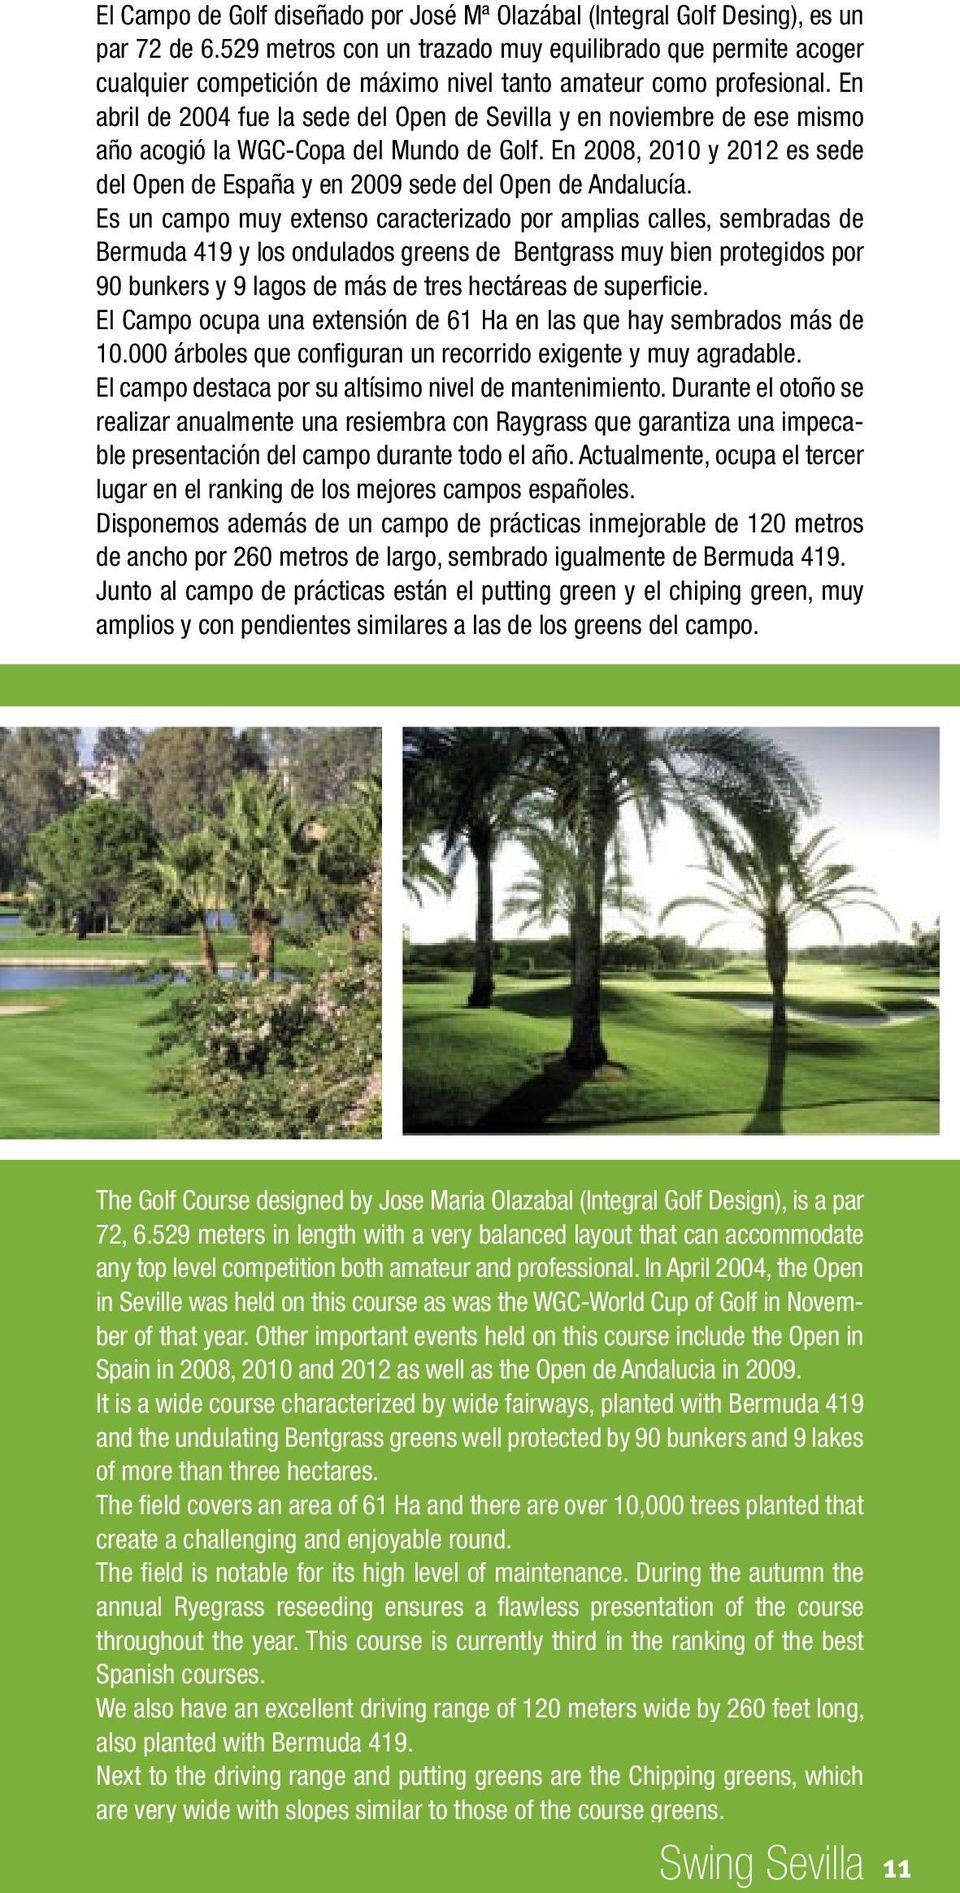 En abril de 2004 fue la sede del Open de Sevilla y en noviembre de ese mismo año acogió la WGC-Copa del Mundo de Golf.